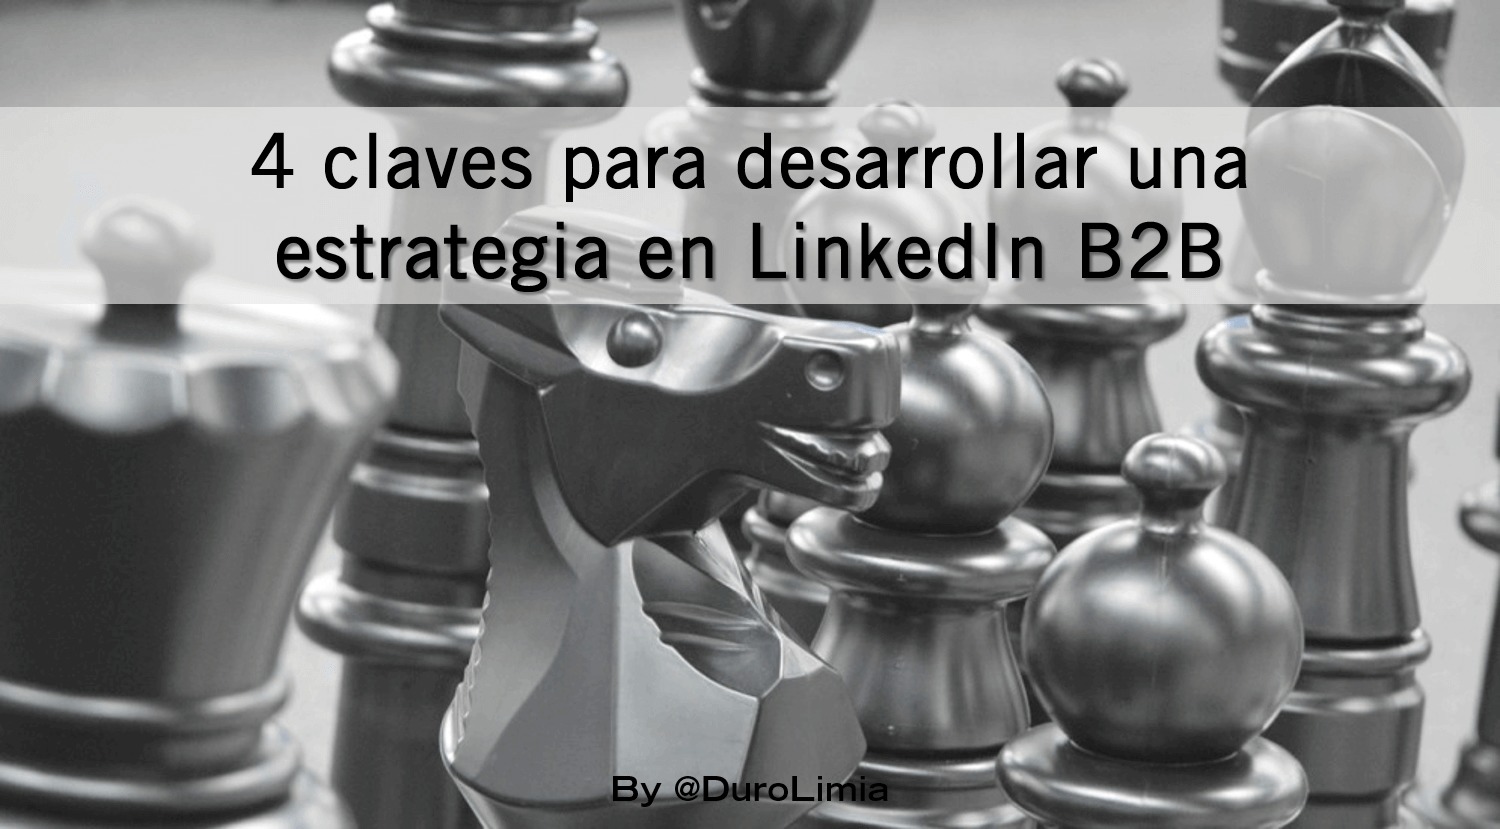 Sonia Duro Limia - 4 claves para desarrollar una estrategia en LinkedIn B2B